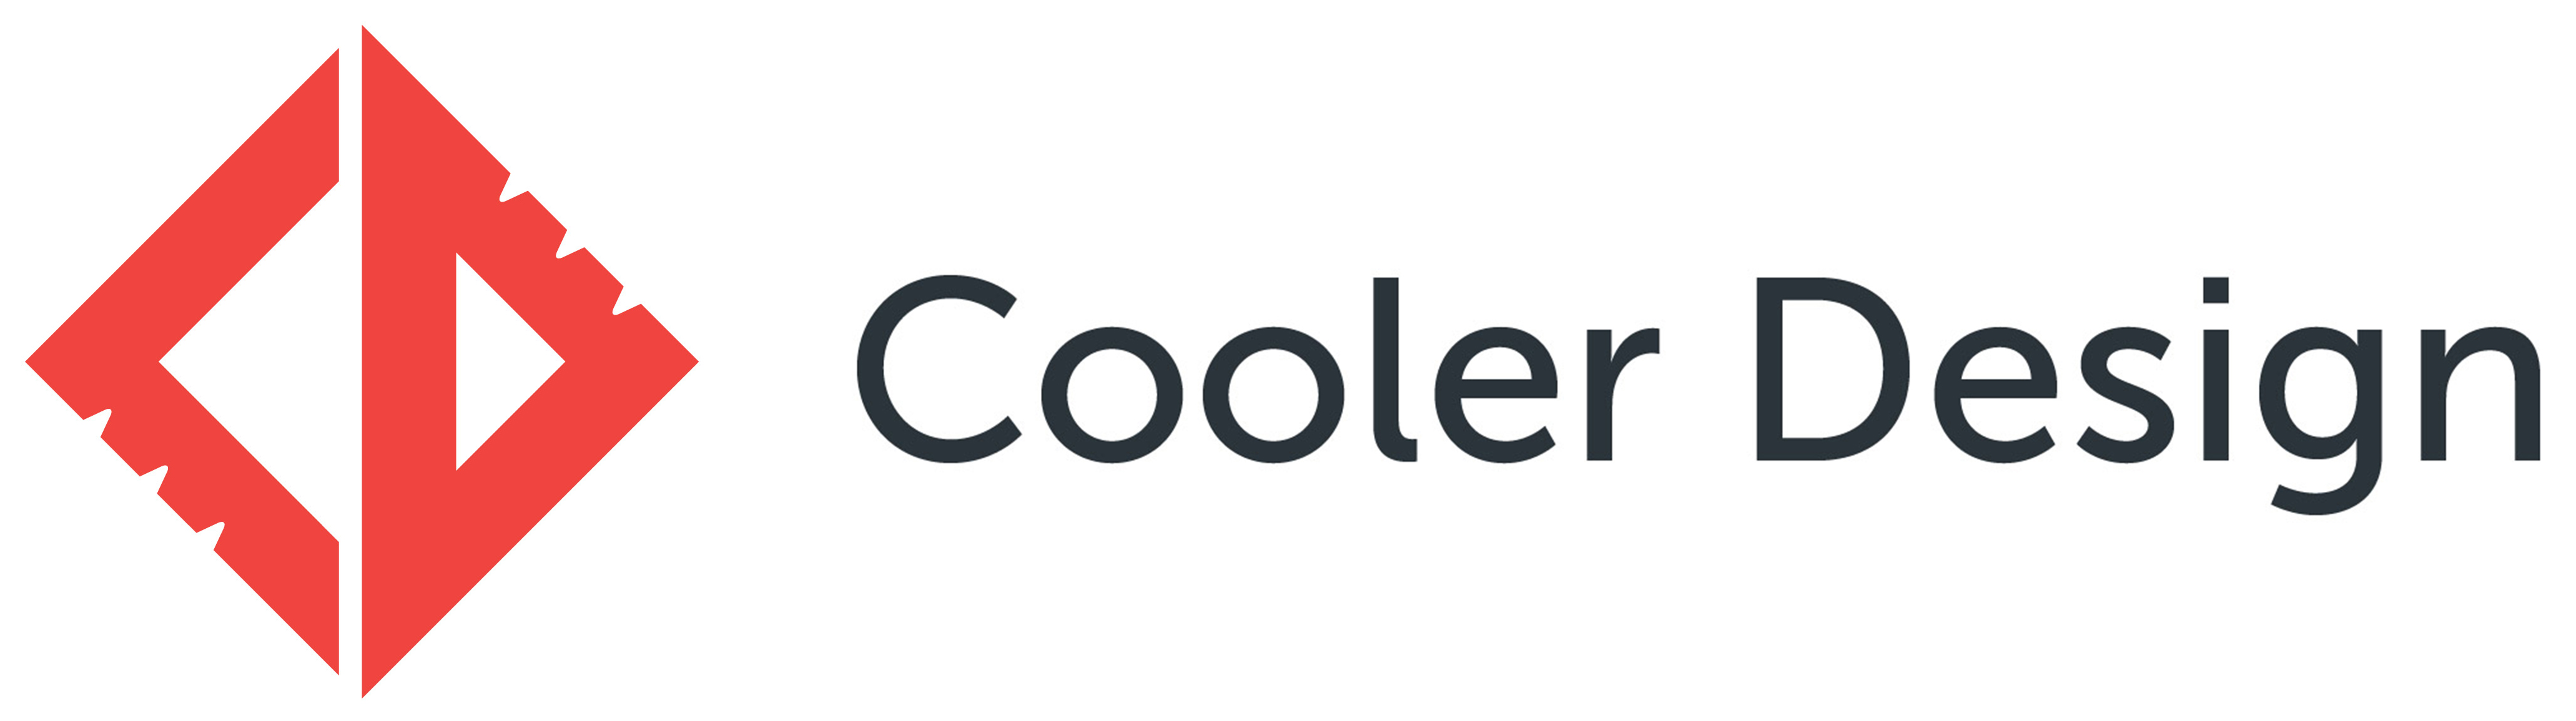 Cooler Design, Inc.